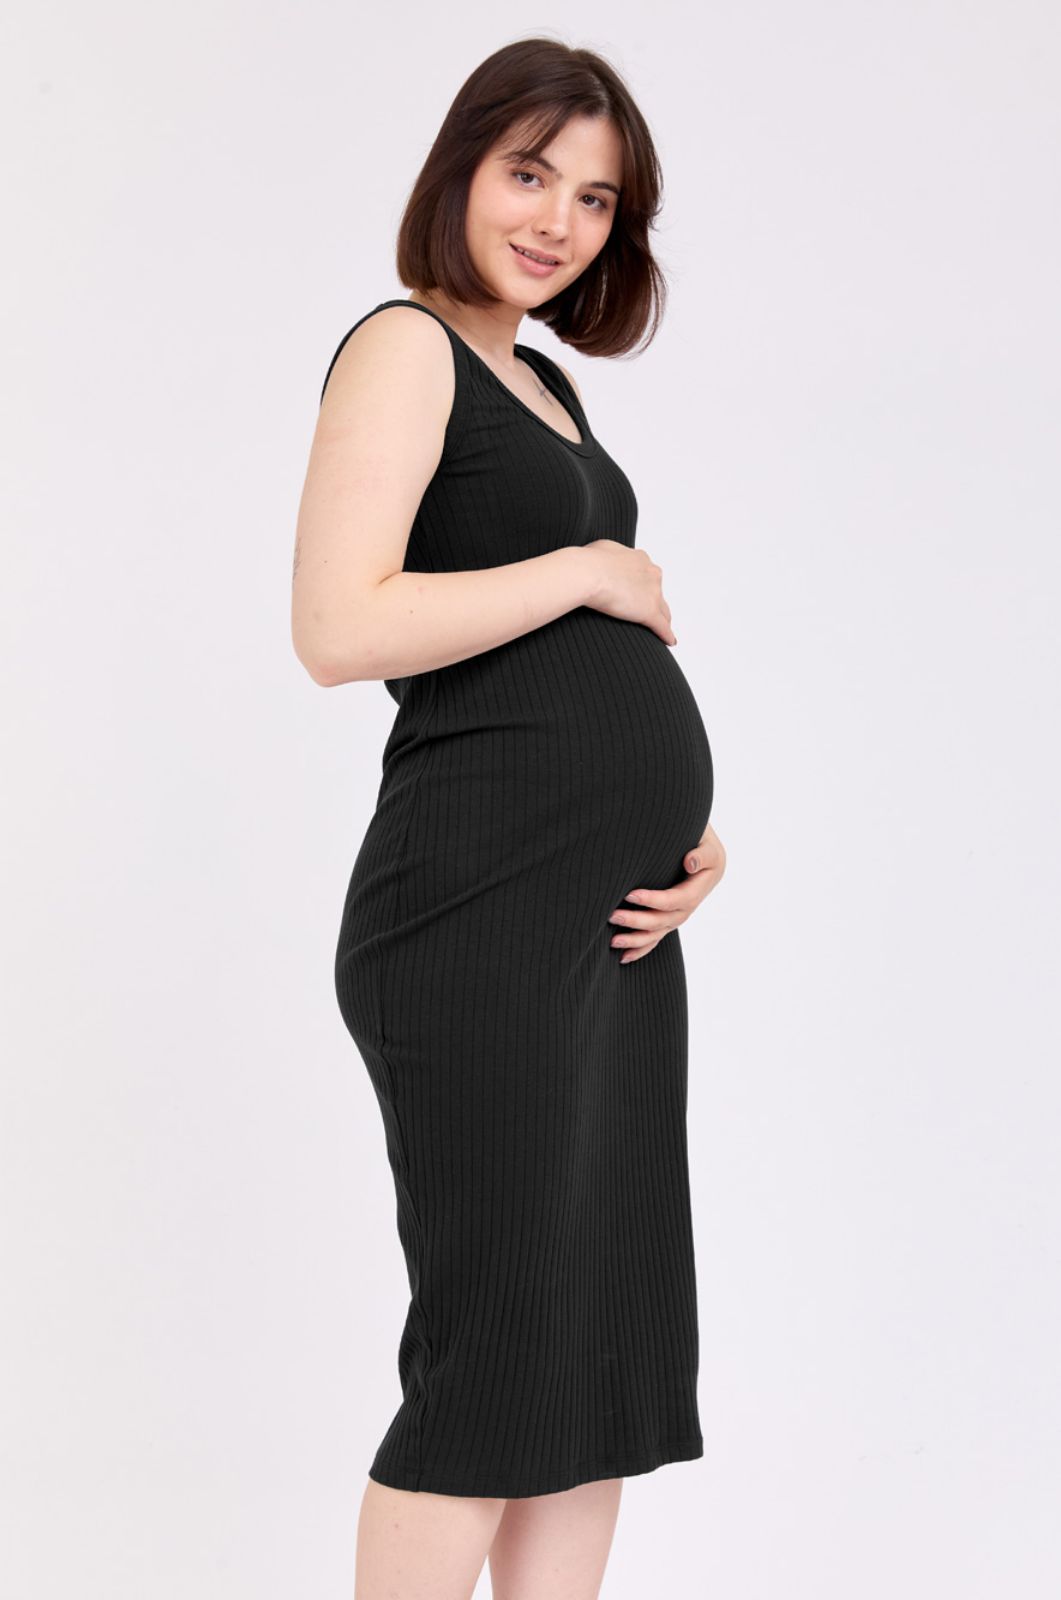 שמלת הריון בר שחורה